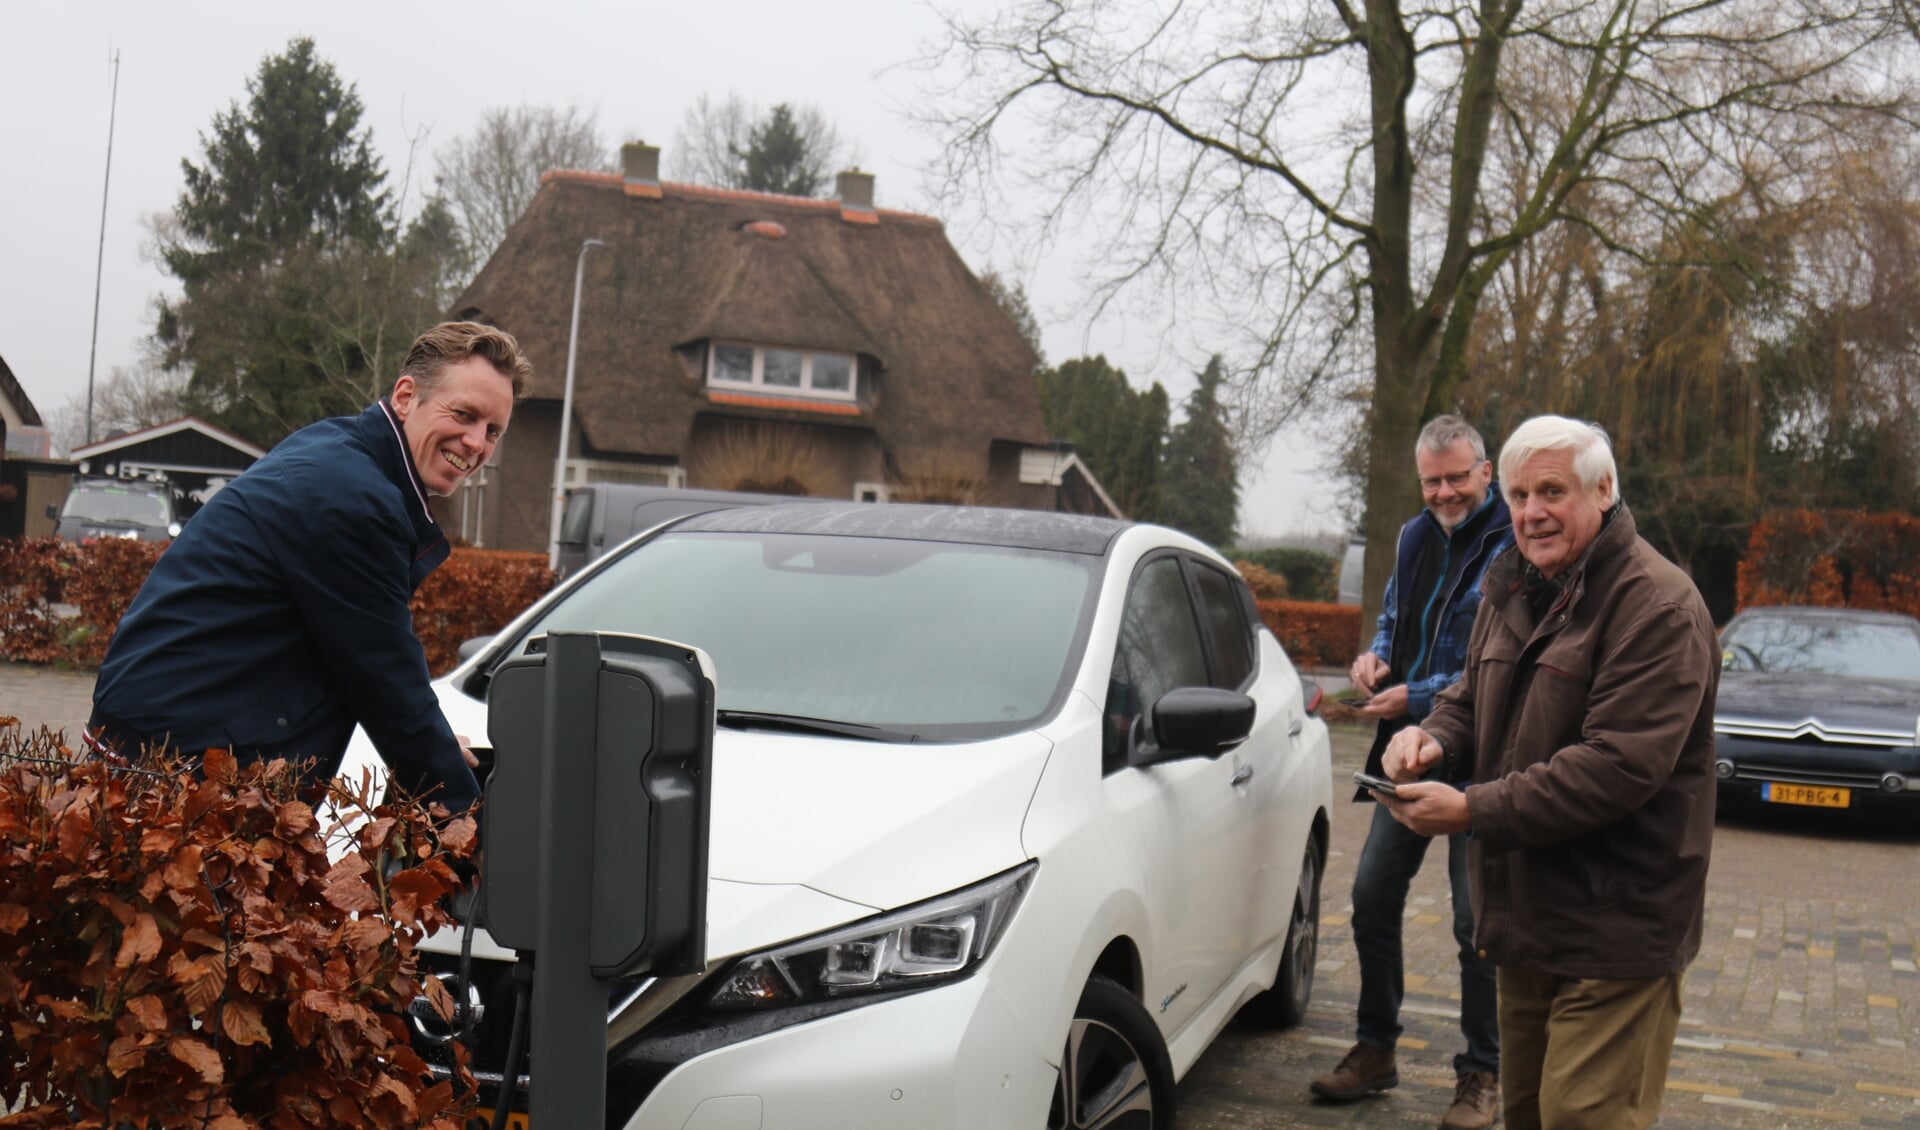 De elektrische deelauto in Willemsoord